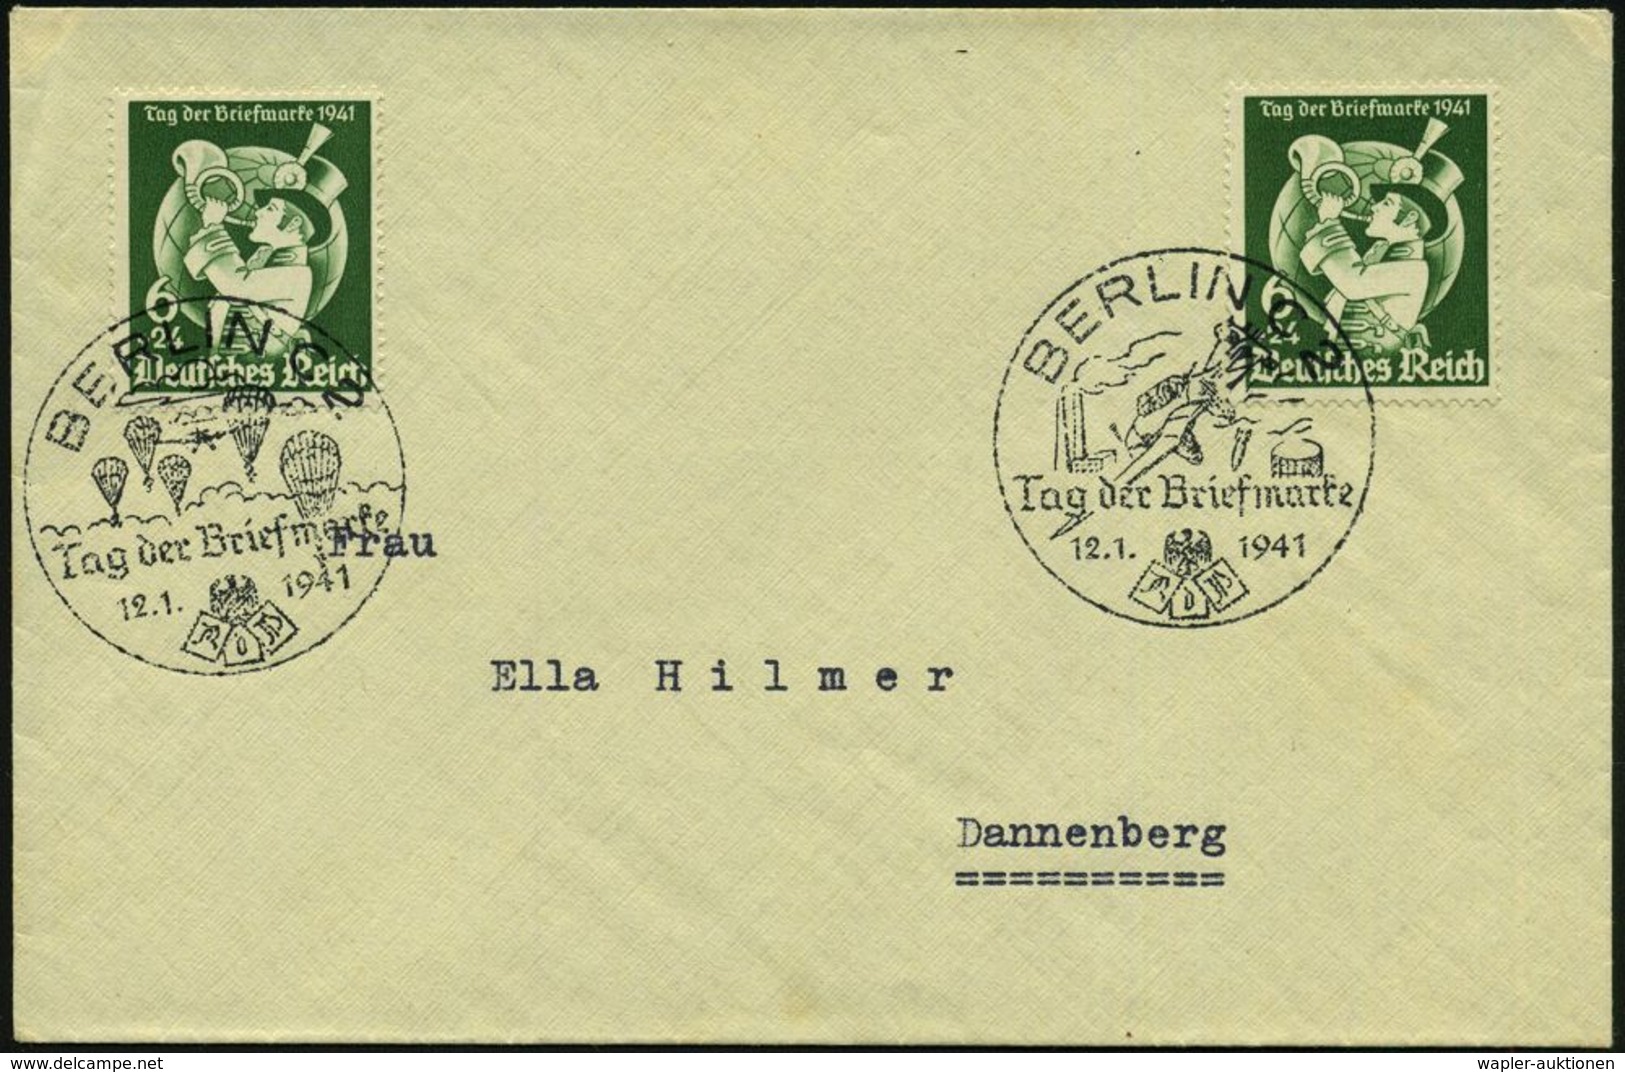 MILITÄRFLUGWESEN / MILITÄRFLUGZEUGE : BERLIN C 2/ Tag Der Briefmarke 1941 (12.1.) 2 Verschiedene SSt = Fallschirmjäger B - Avions